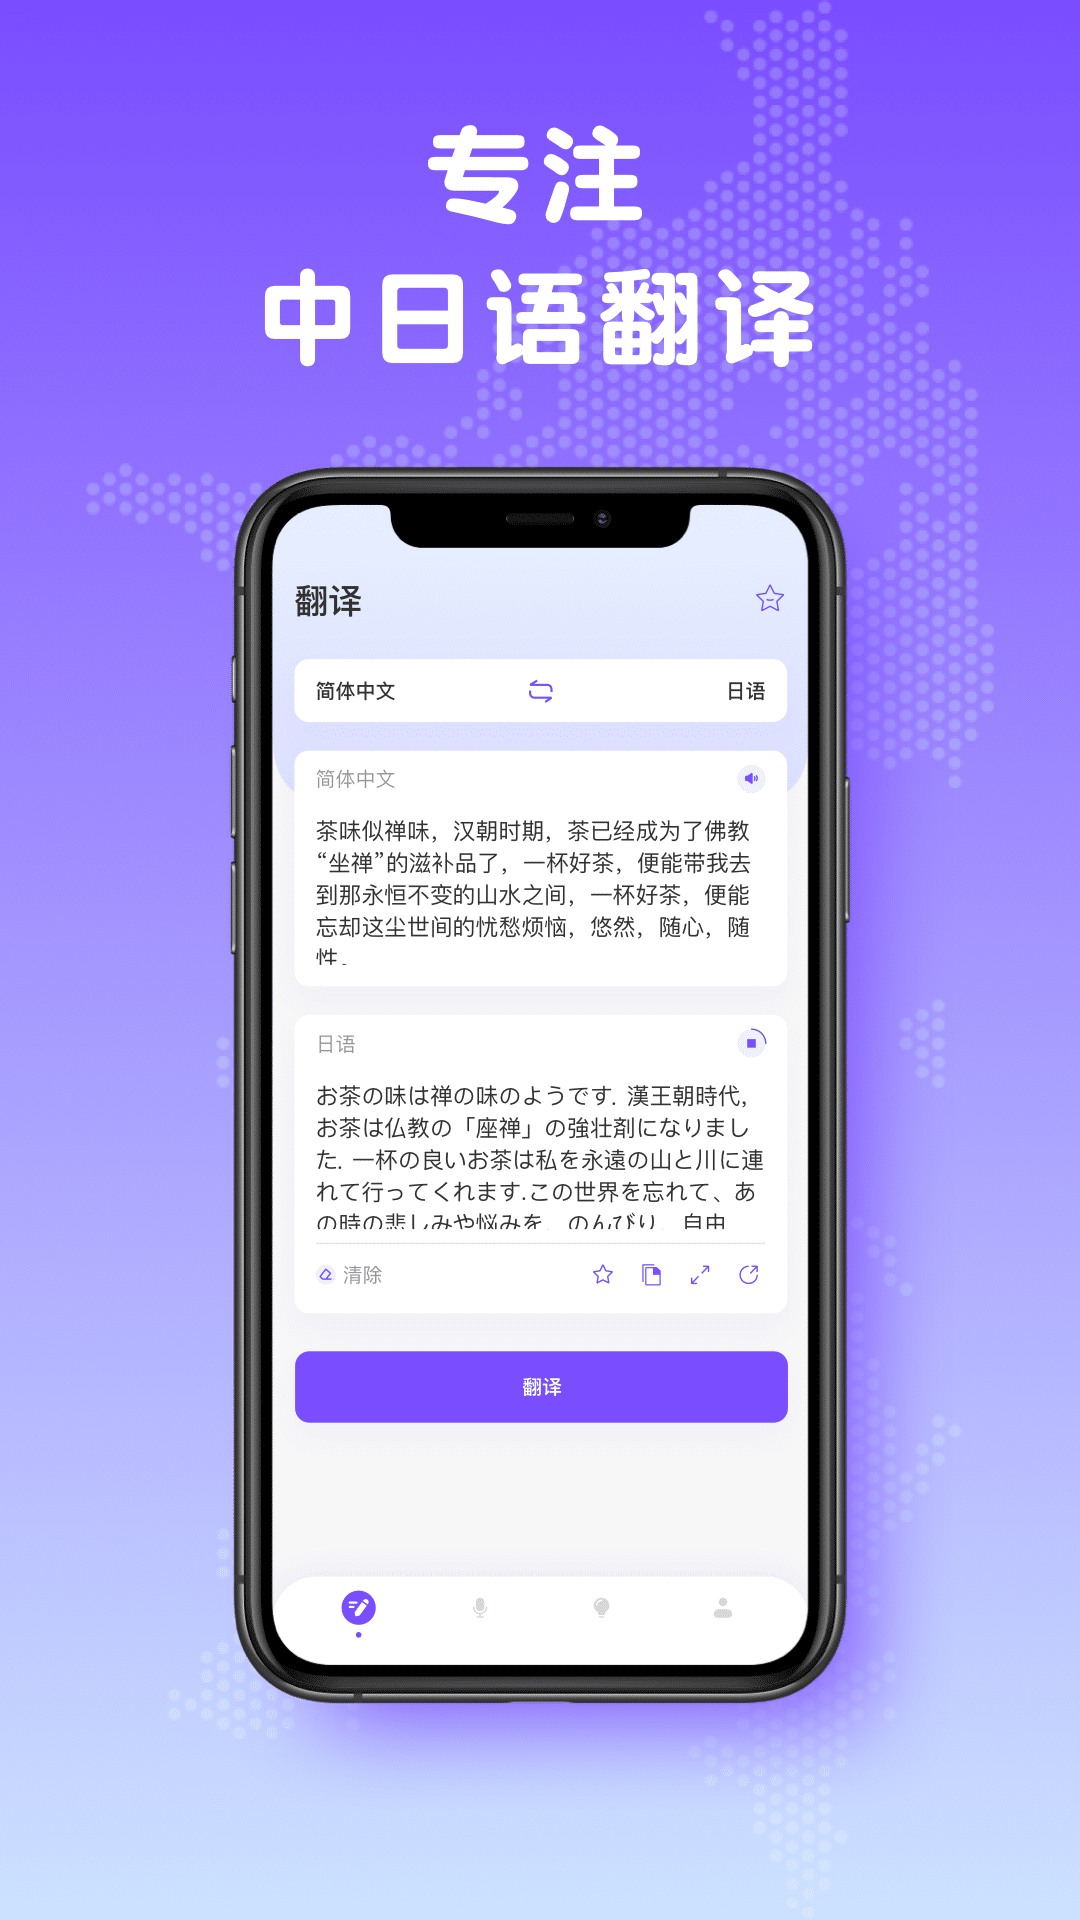 日文翻译器v1.0.0